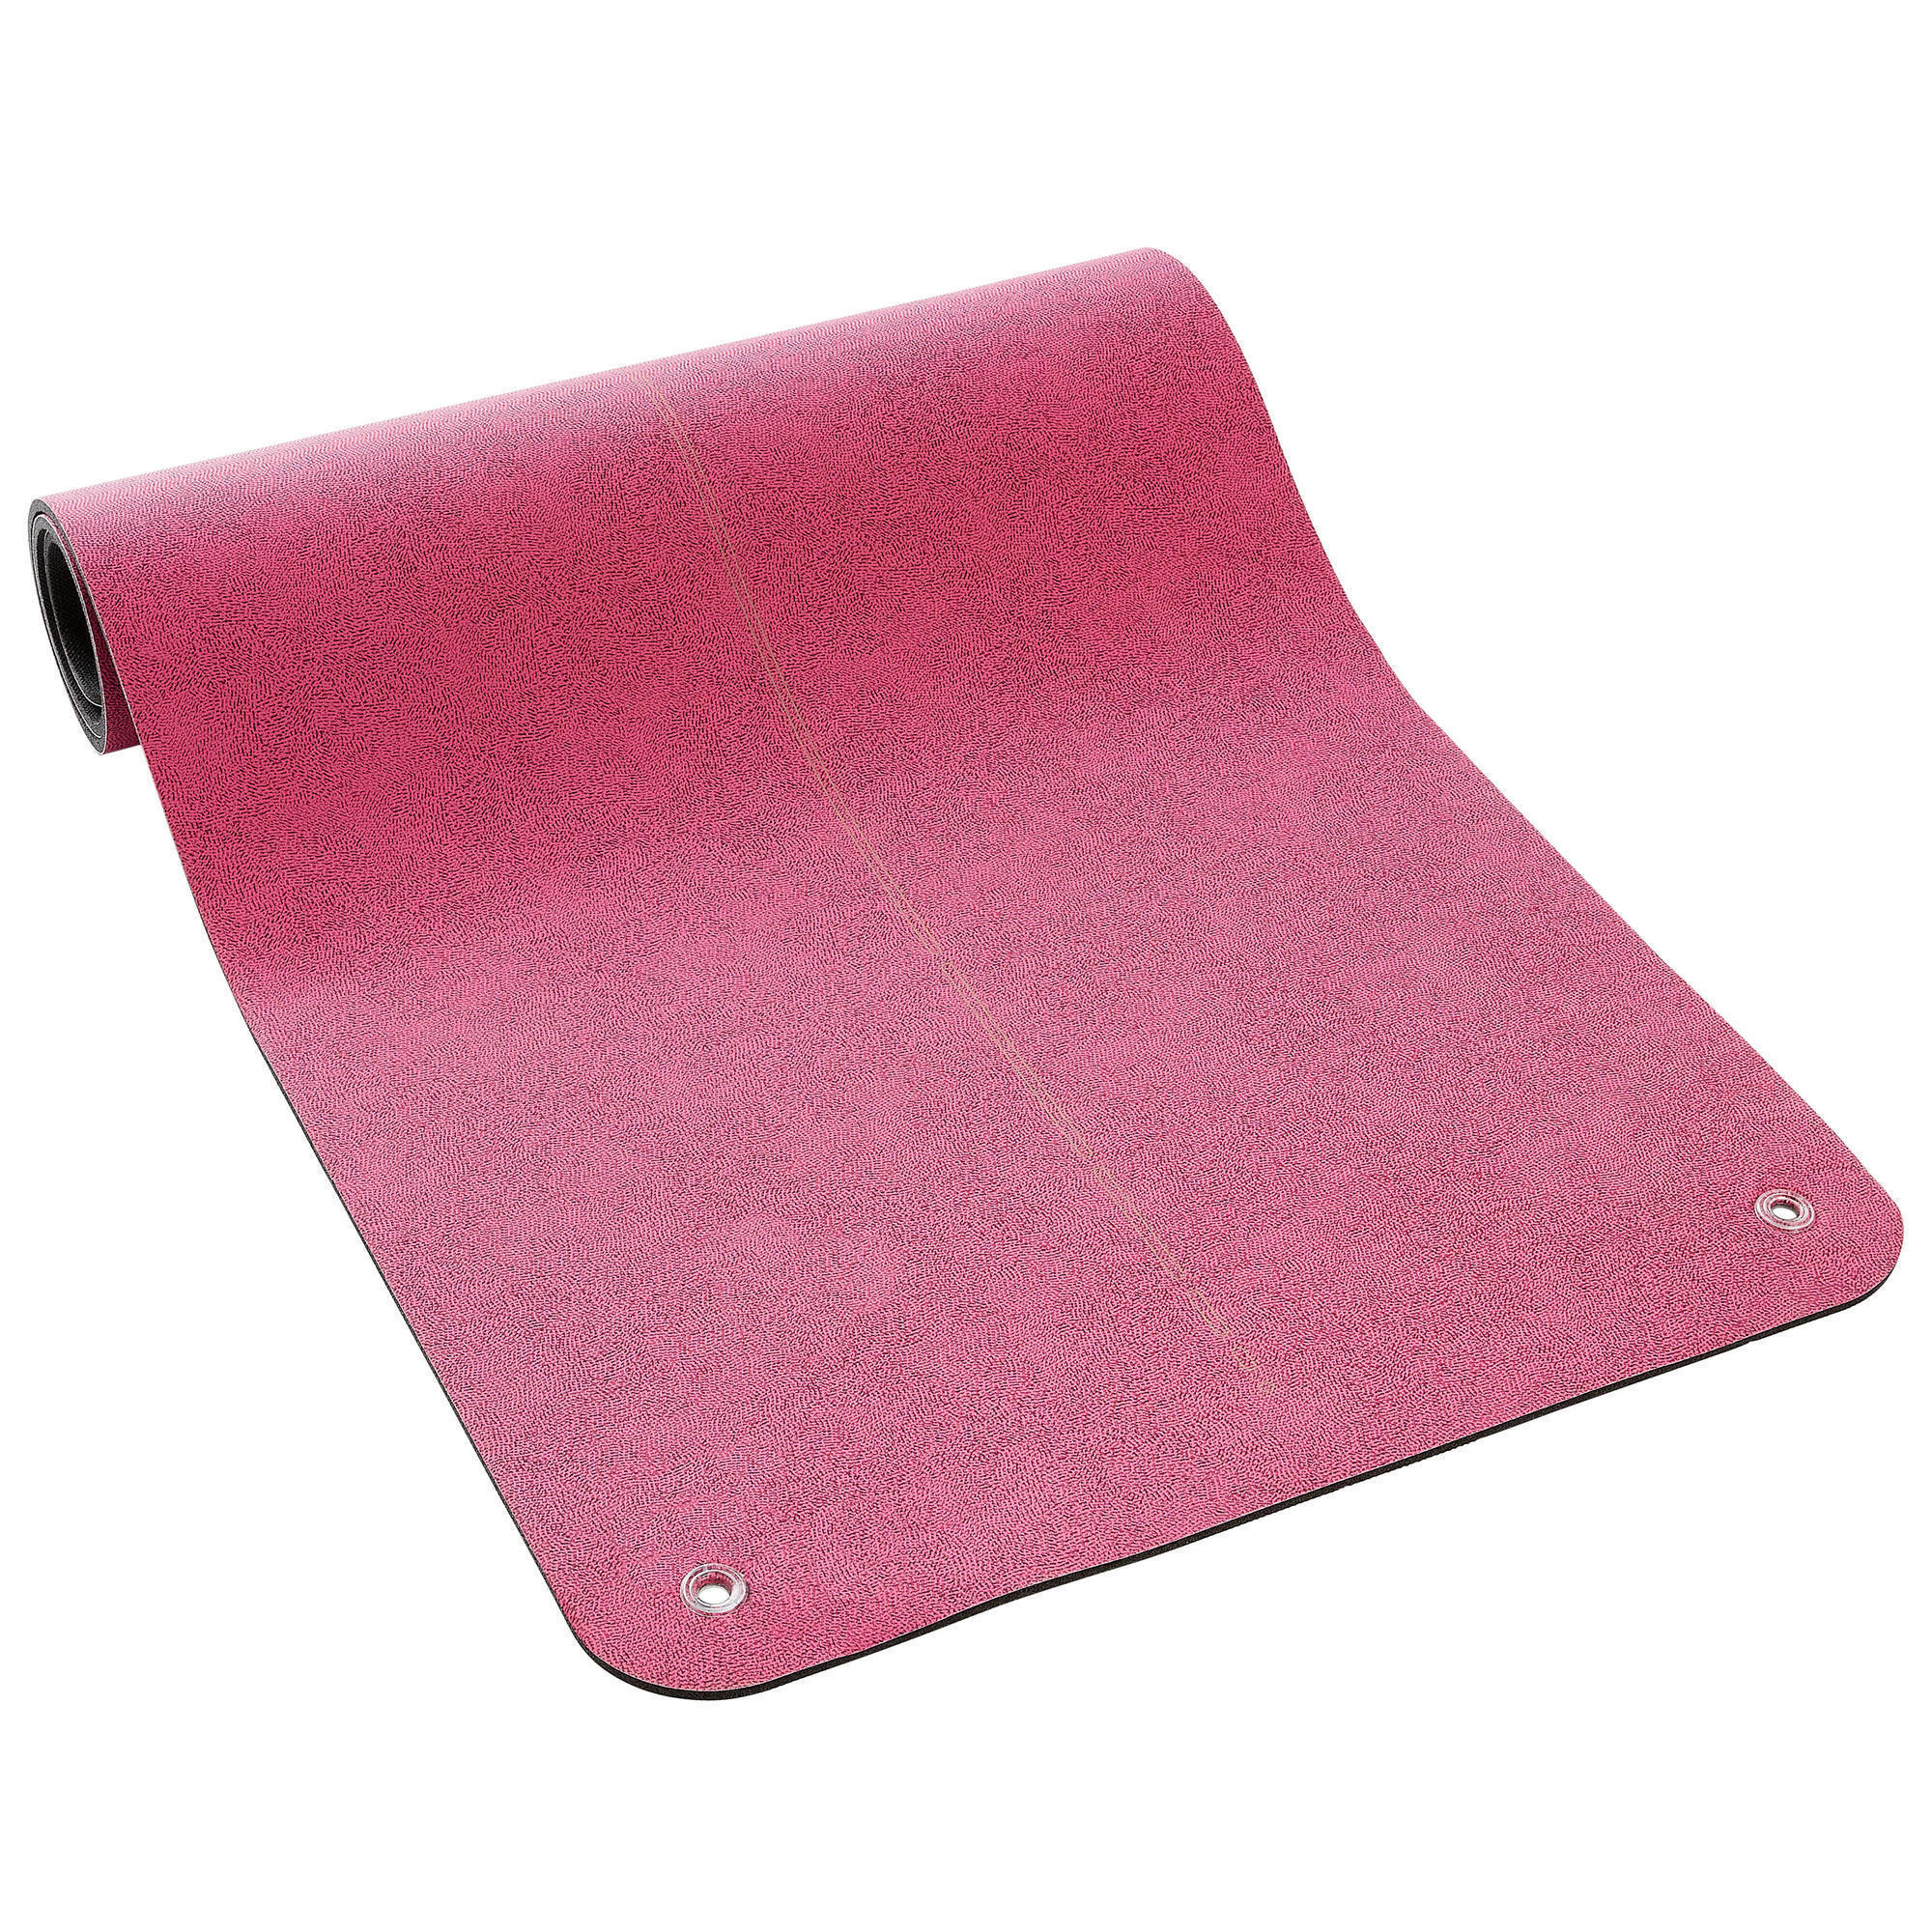 DOMYOS Durable Fitness Floor Mat Tonemat 500 - 170 cm x 62 cm x 8 mm - AOP Pink